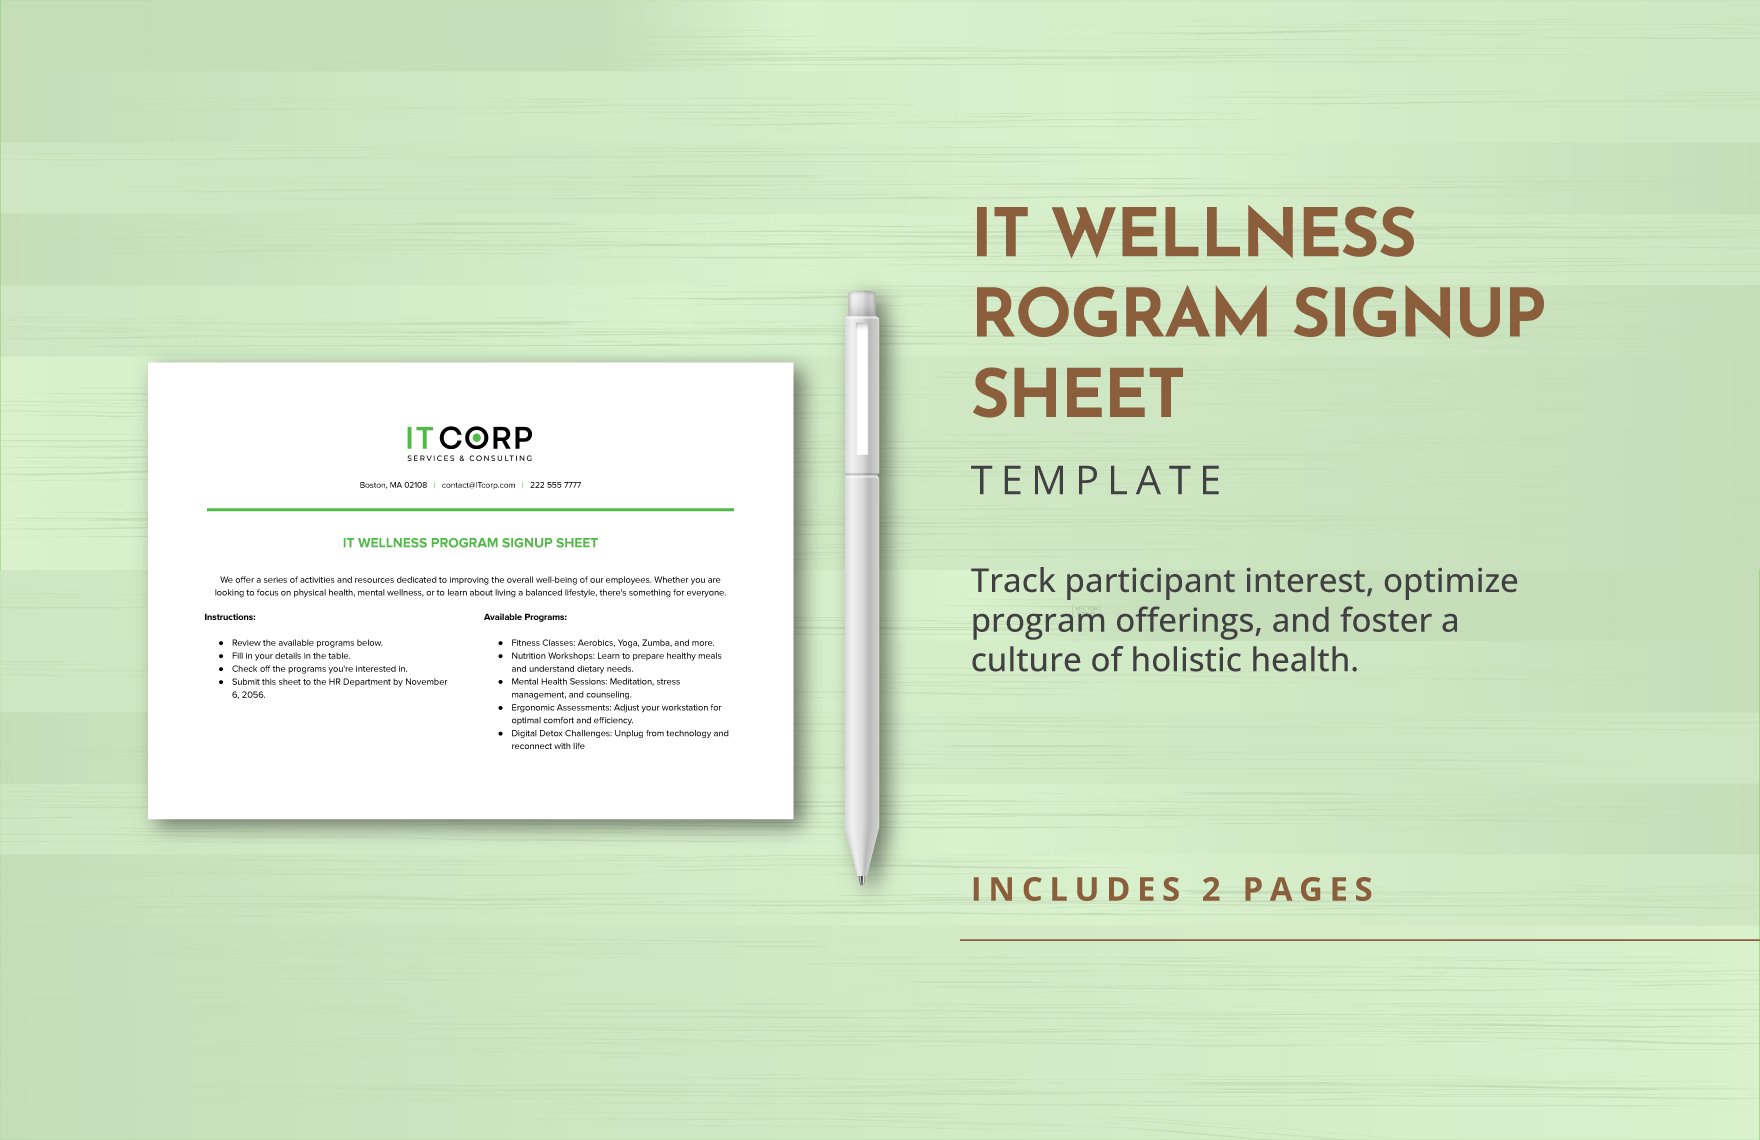 IT Wellness Program Signup Sheet Template